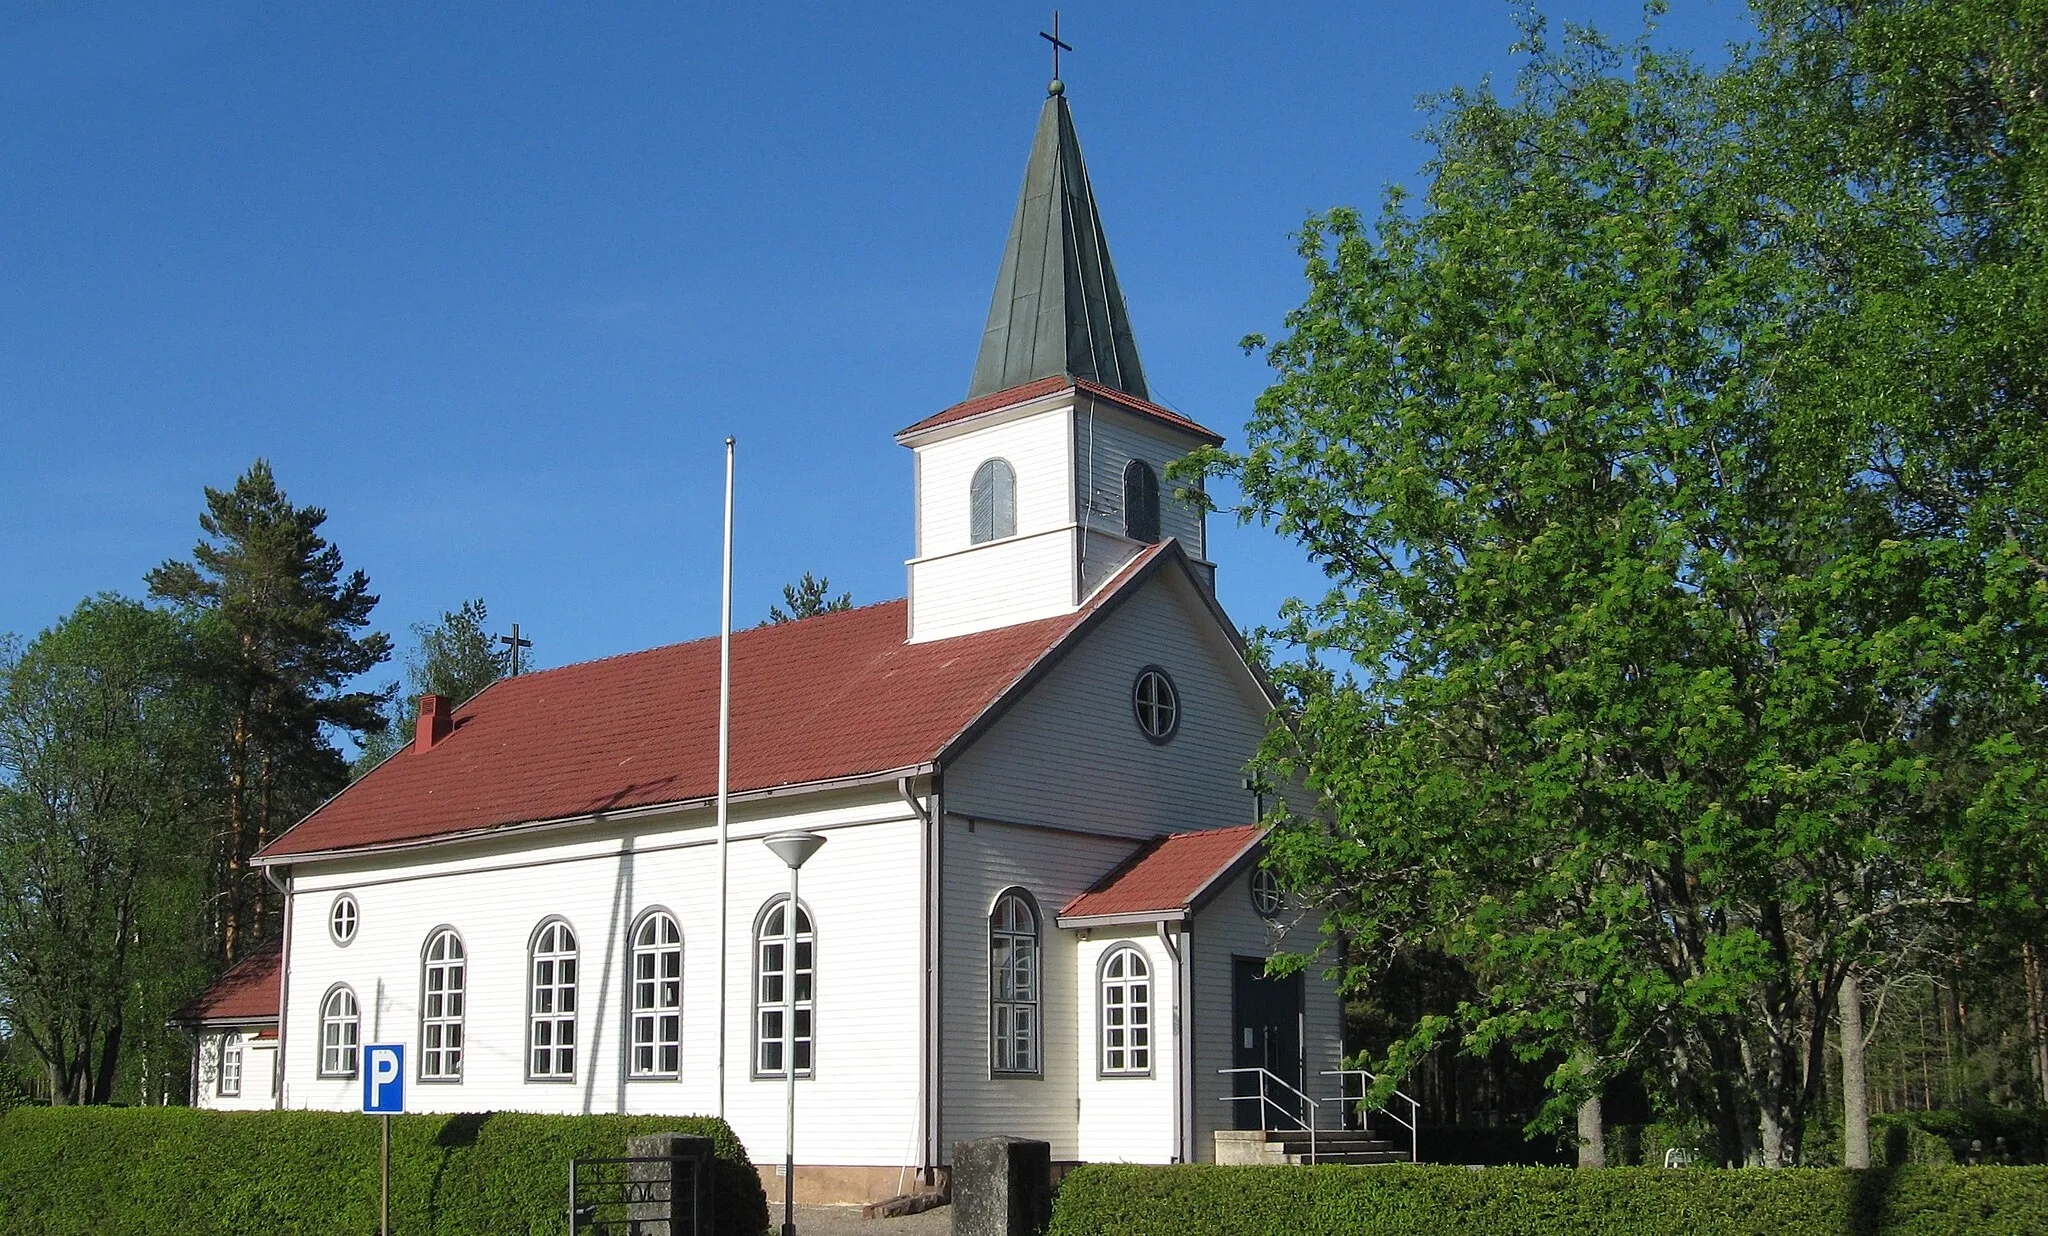 Photo showing: Kauhajärvi church in Kauhajärvi village, Kauhajoki, Finland.